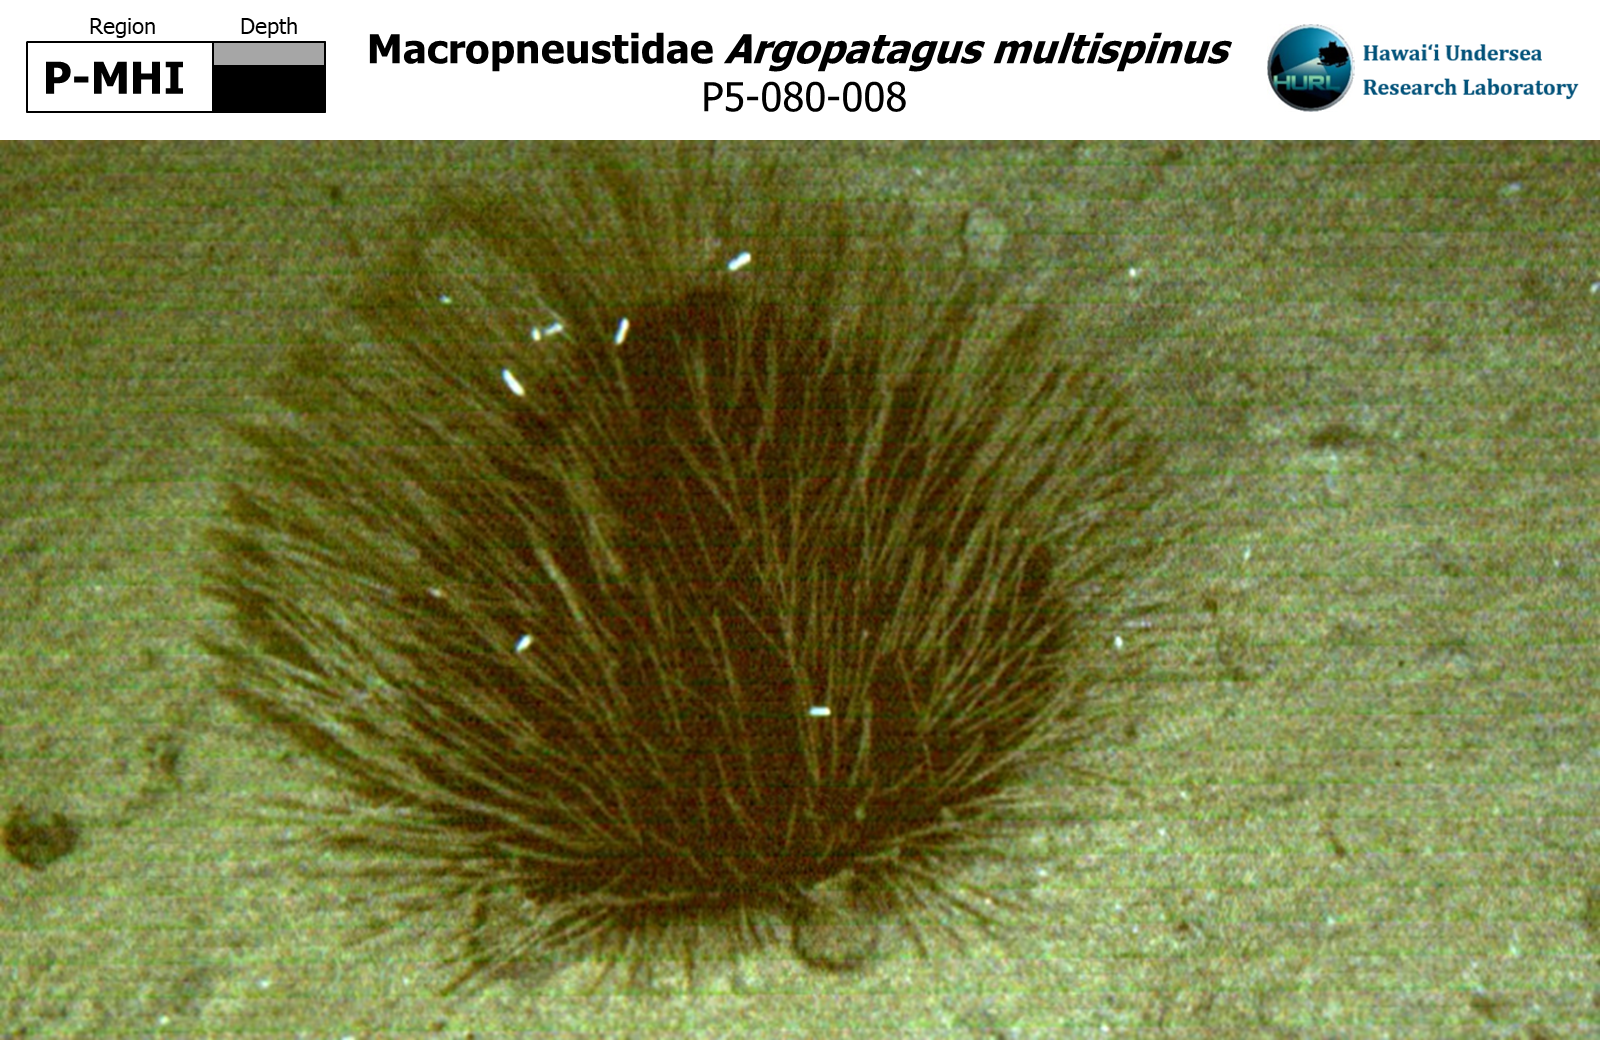 Argopatagus multispinus